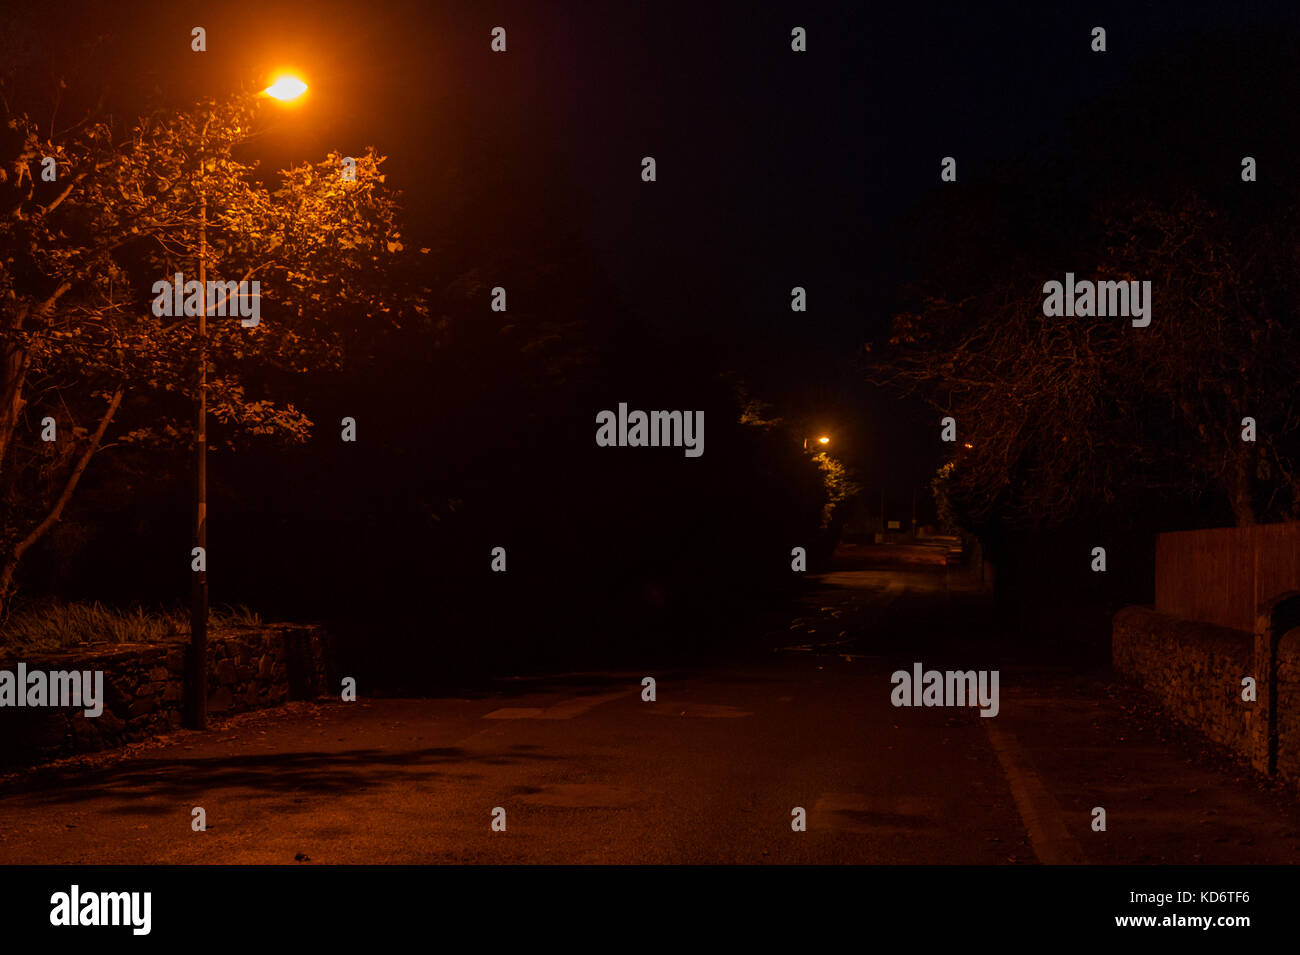 Strada vuota in una notte buia con un orange street luce che illumina la strada e un albero con una copia dello spazio. Foto Stock